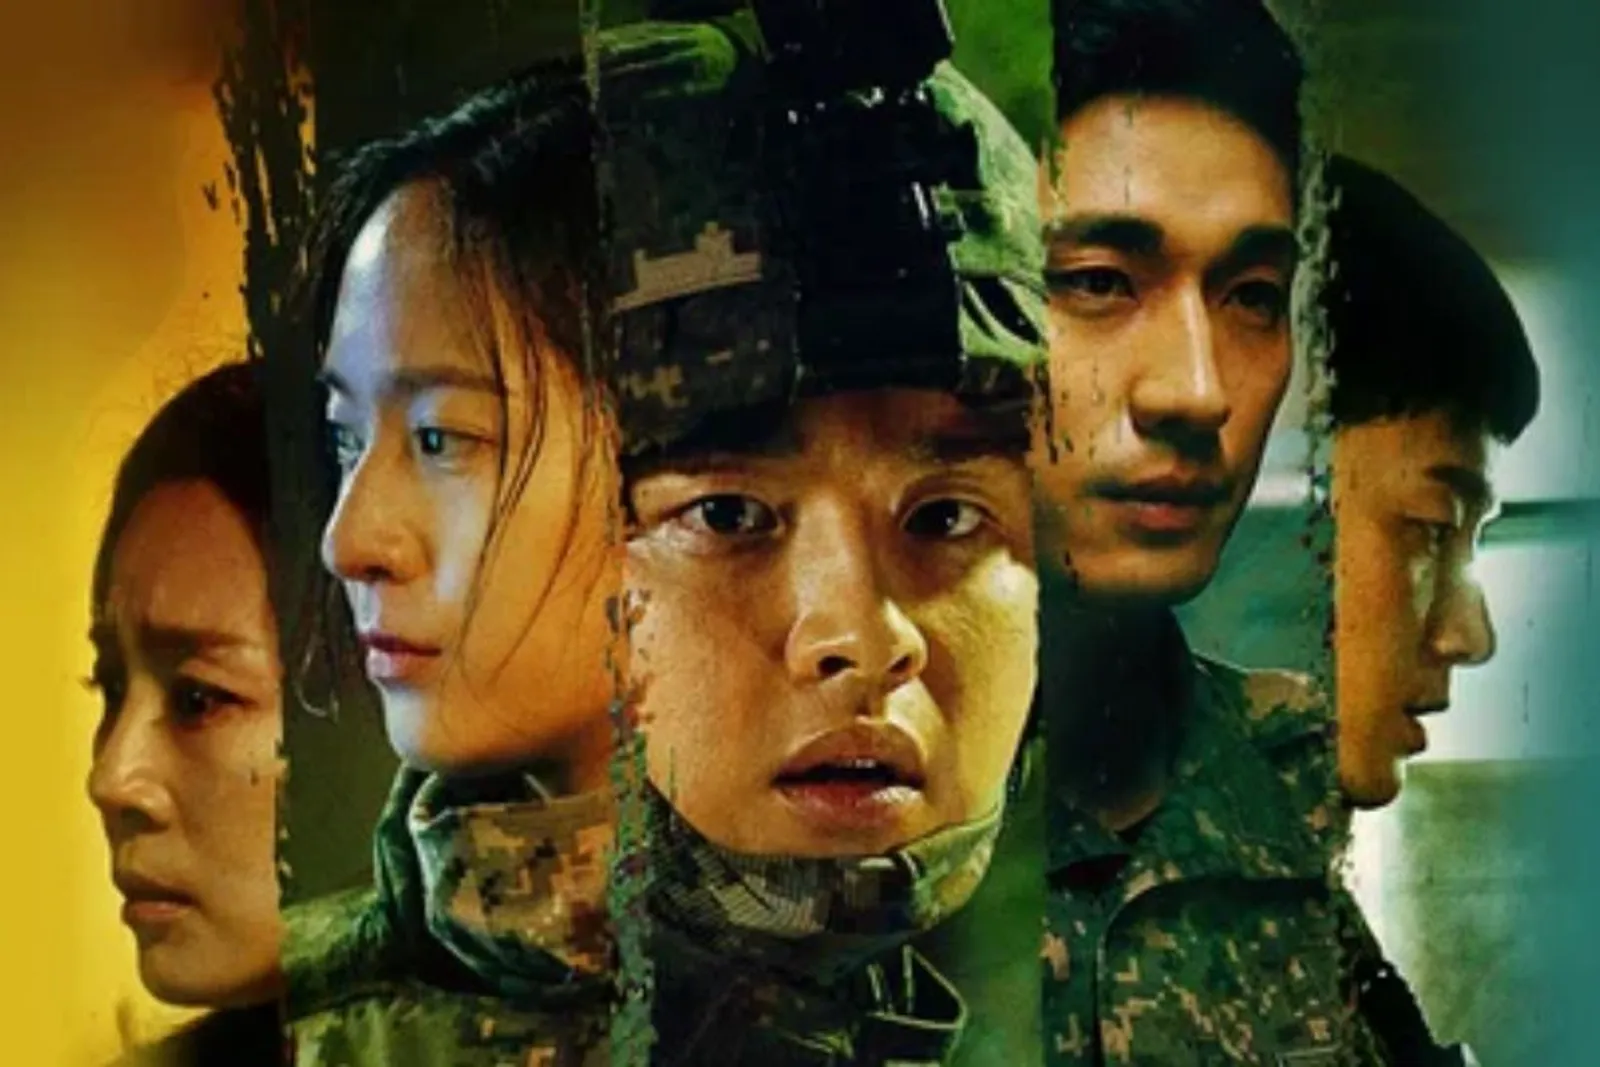 8 Drama Korea Tentang Monster Terbaru yang Menegangkan